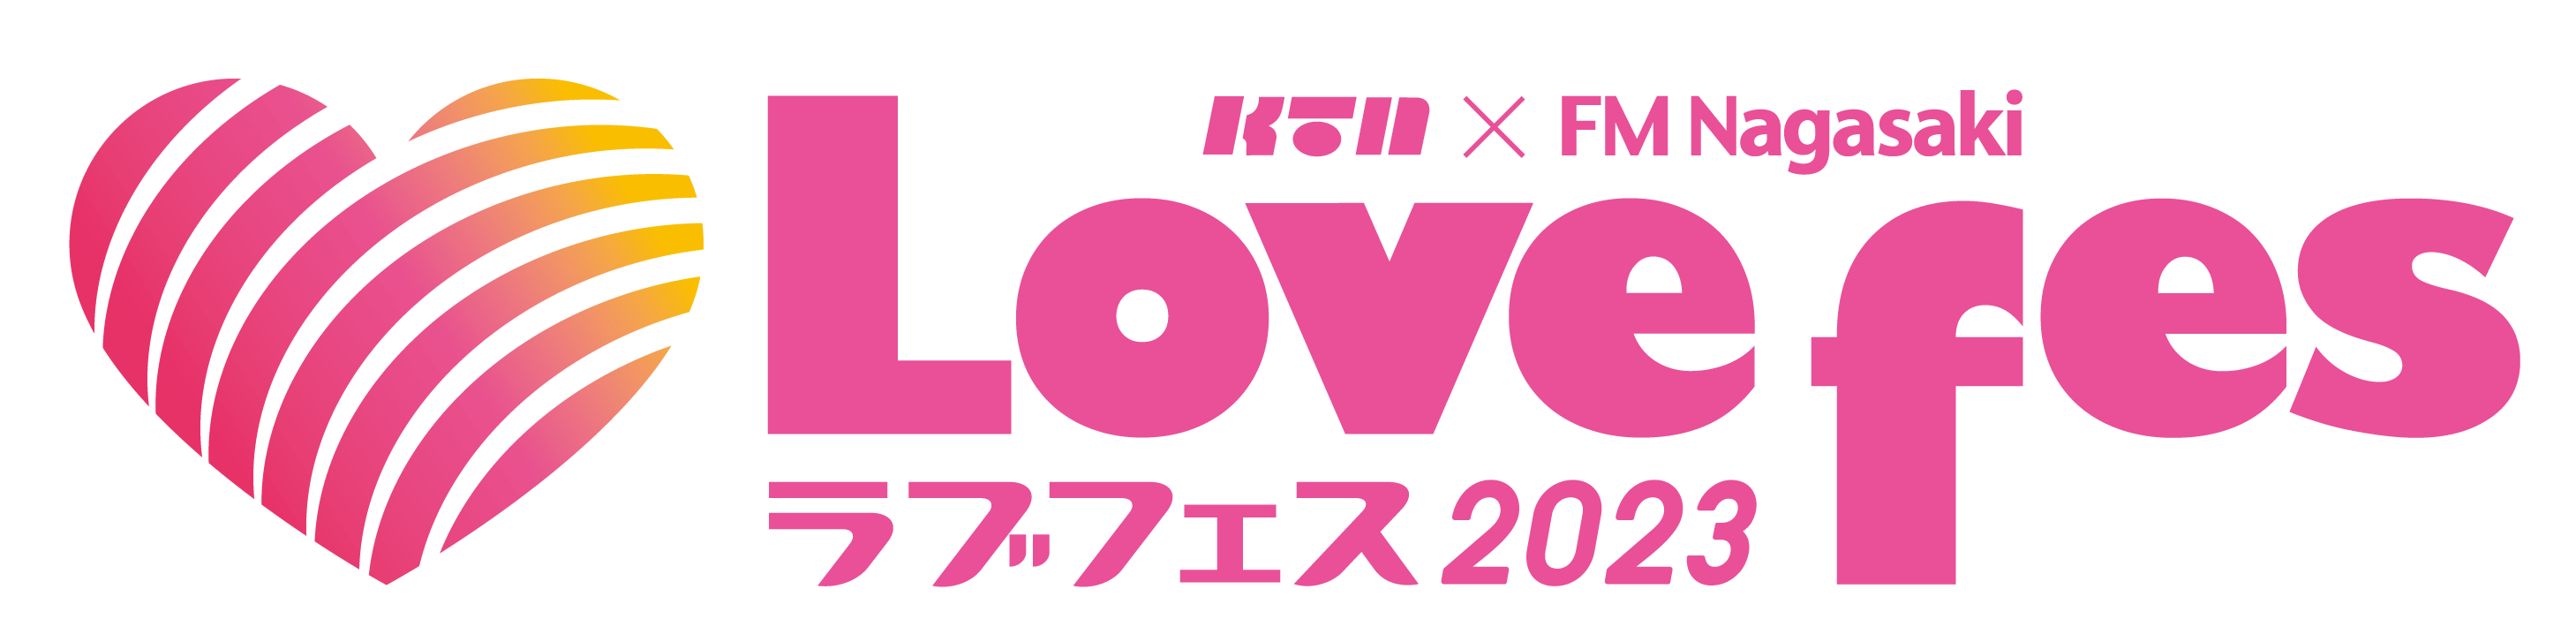 Lovefes2023-logo-Y01.png